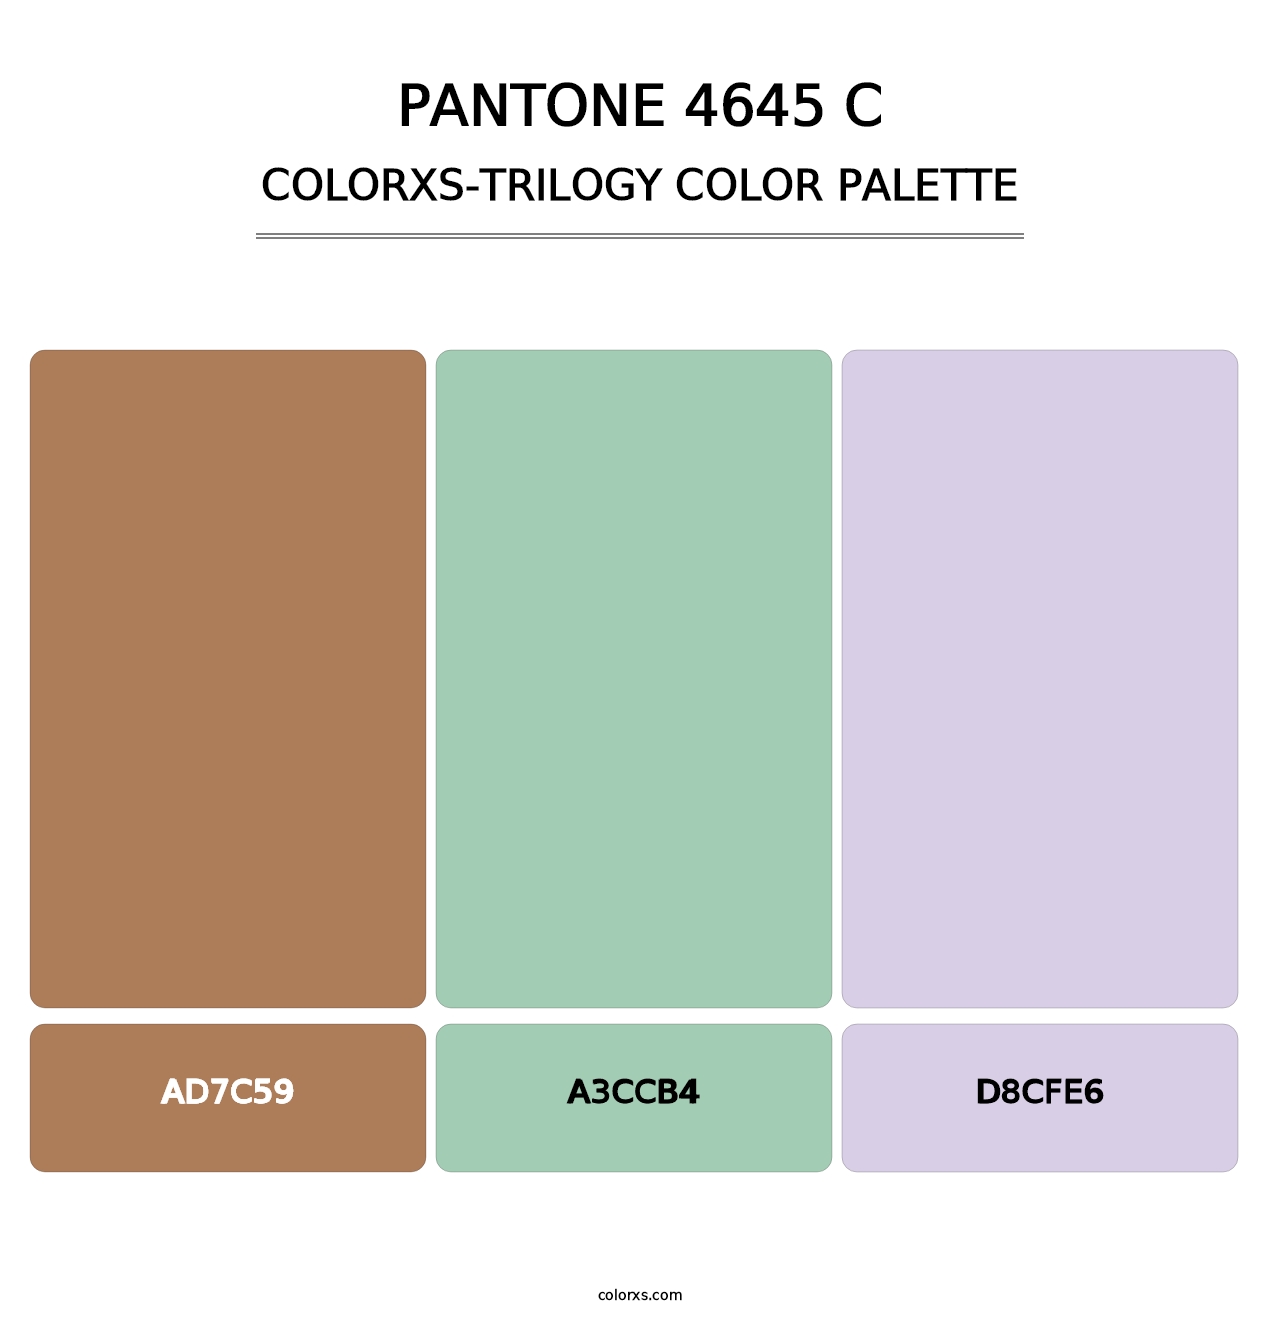 PANTONE 4645 C - Colorxs Trilogy Palette